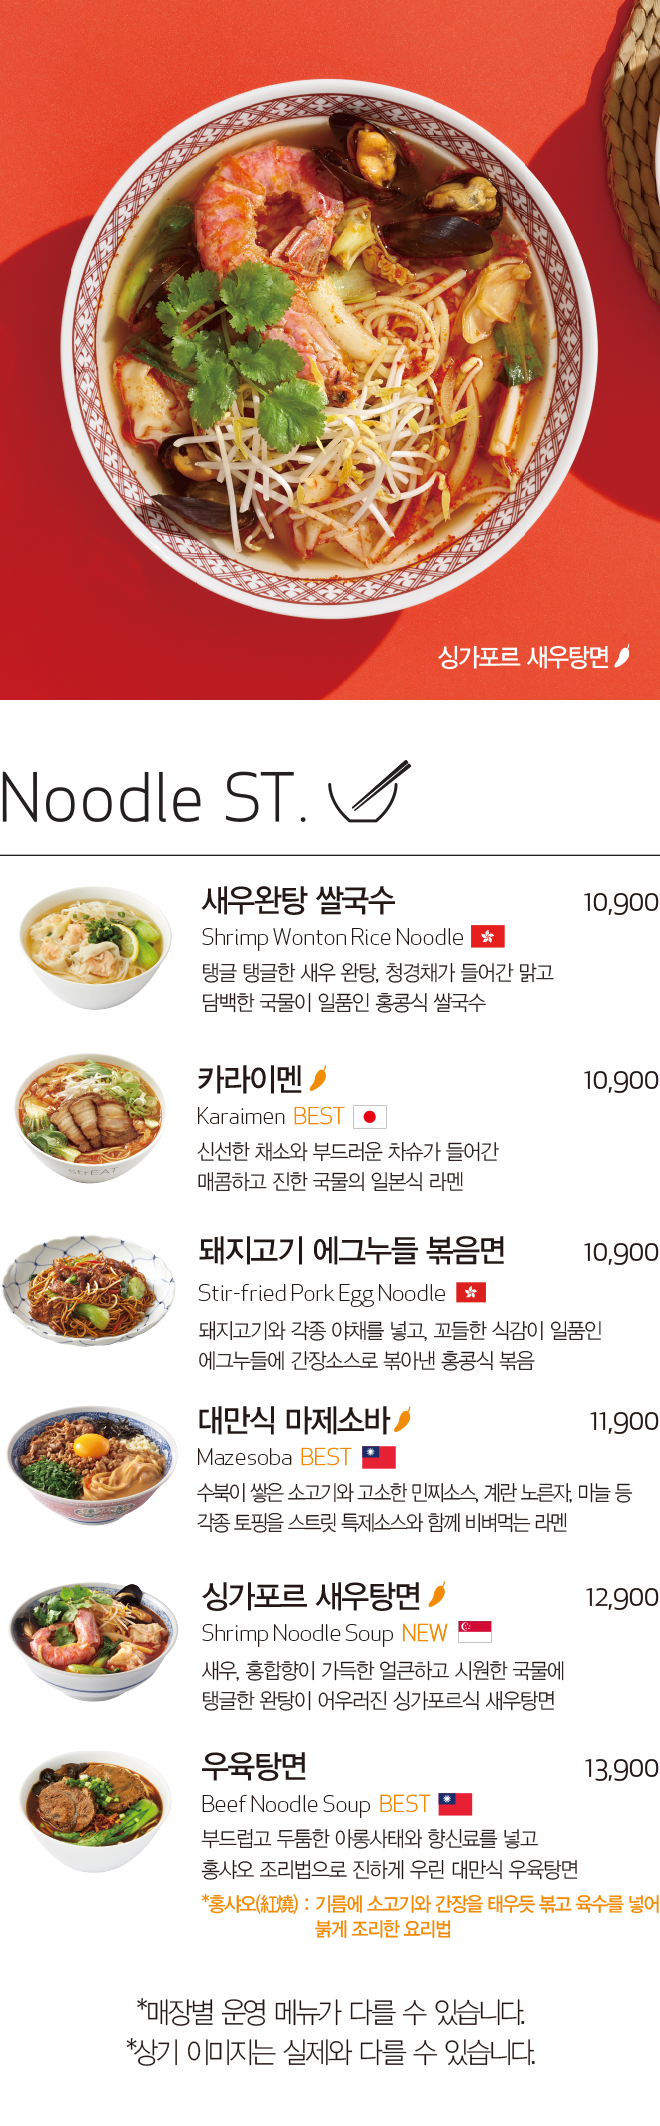 Noodle ST.